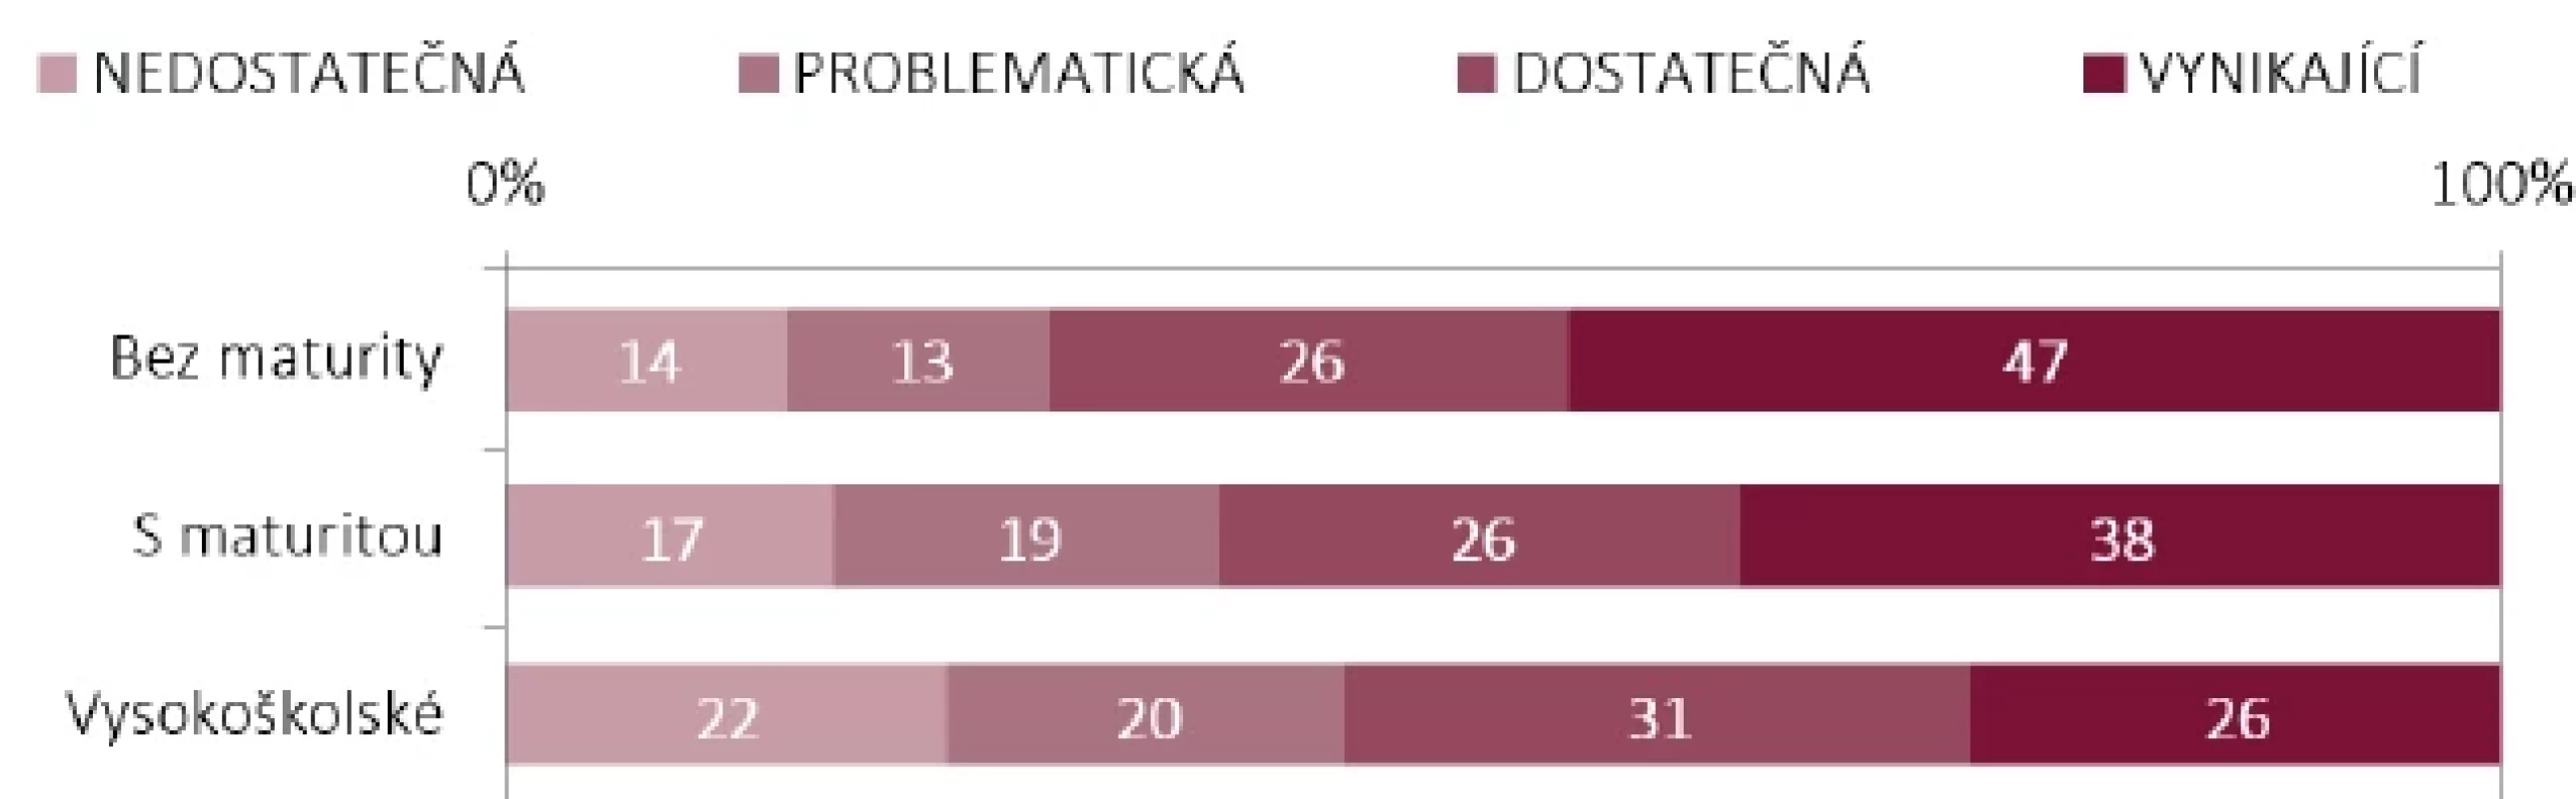 Zdravotní gramotnost podle vzdělání
v souboru českých respondentů